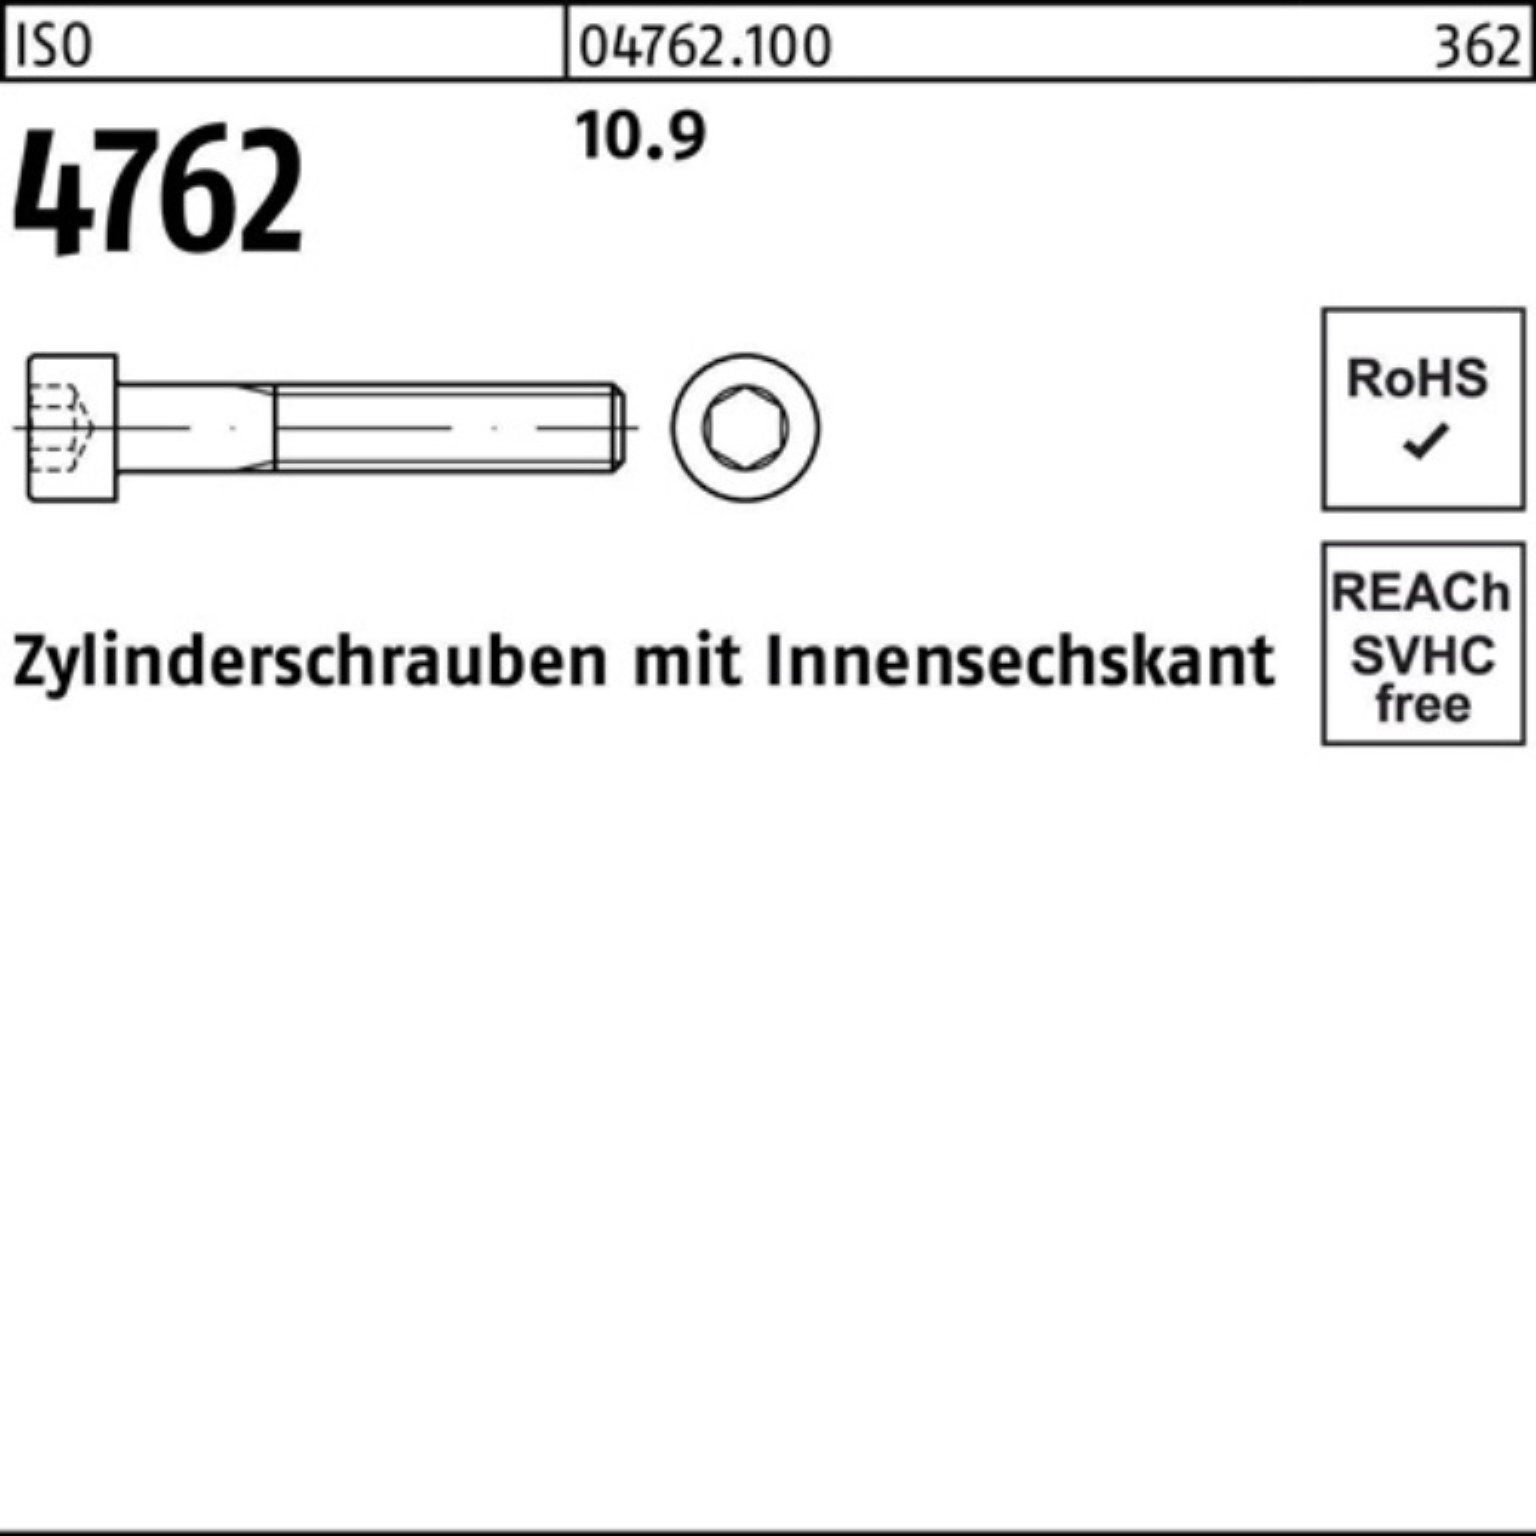 10.9 100er 60 Reyher Zylinderschraube 4762 ISO Zylinderschraube Stück 1 Innen-6kt M36x I Pack